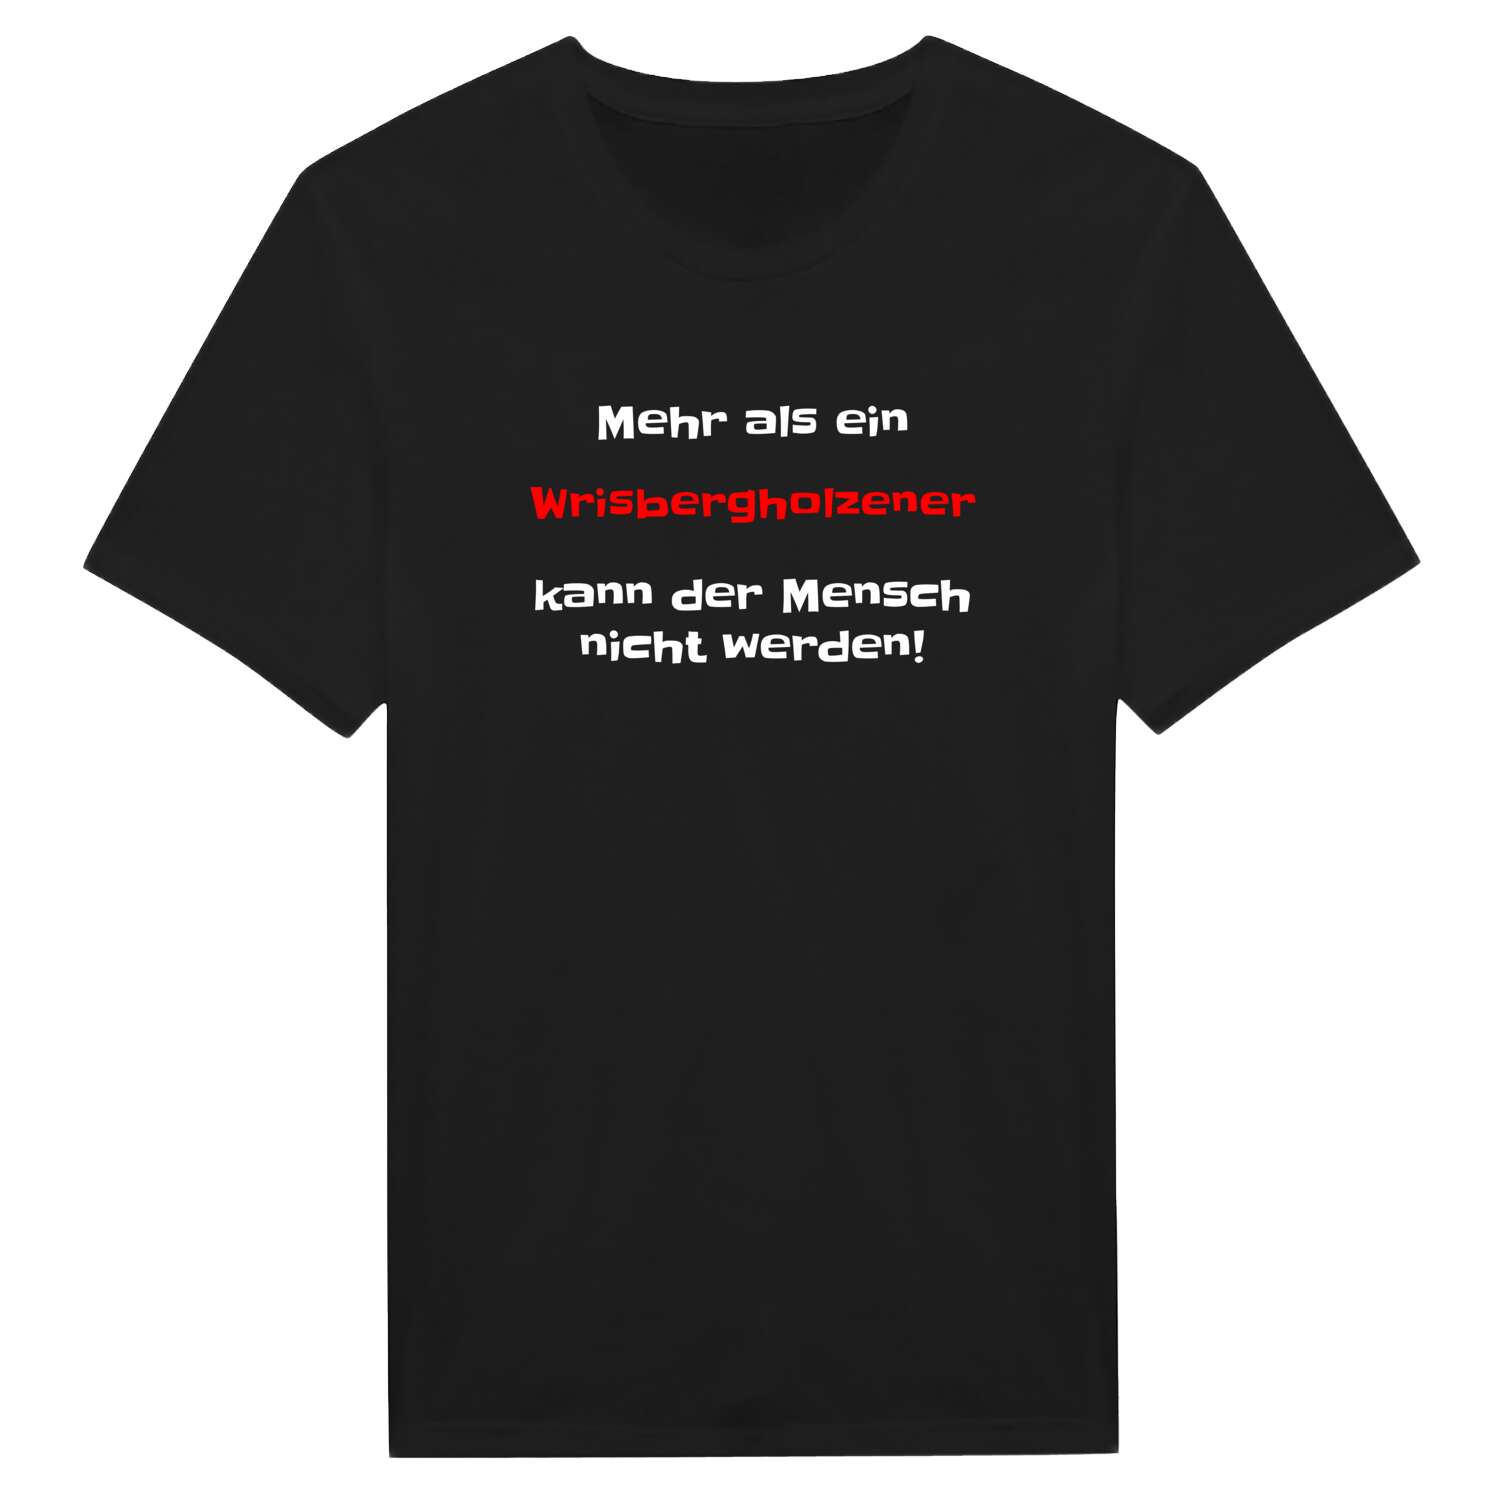 Wrisbergholzen T-Shirt »Mehr als ein«